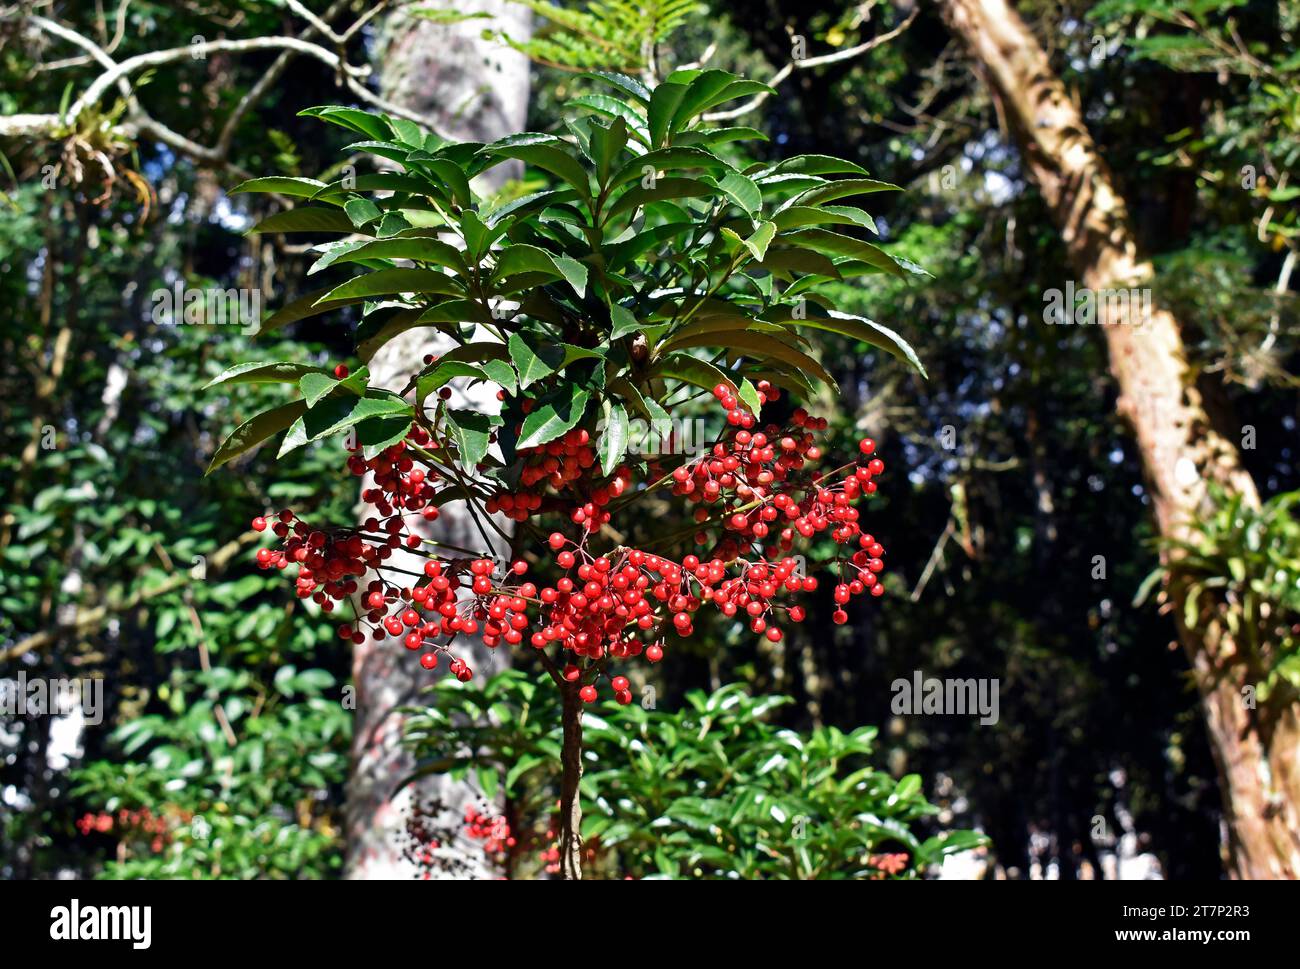 Christmas berry (Ardisia crenata) on garden in Petropolis, Rio de Janeiro, Brazil Stock Photo